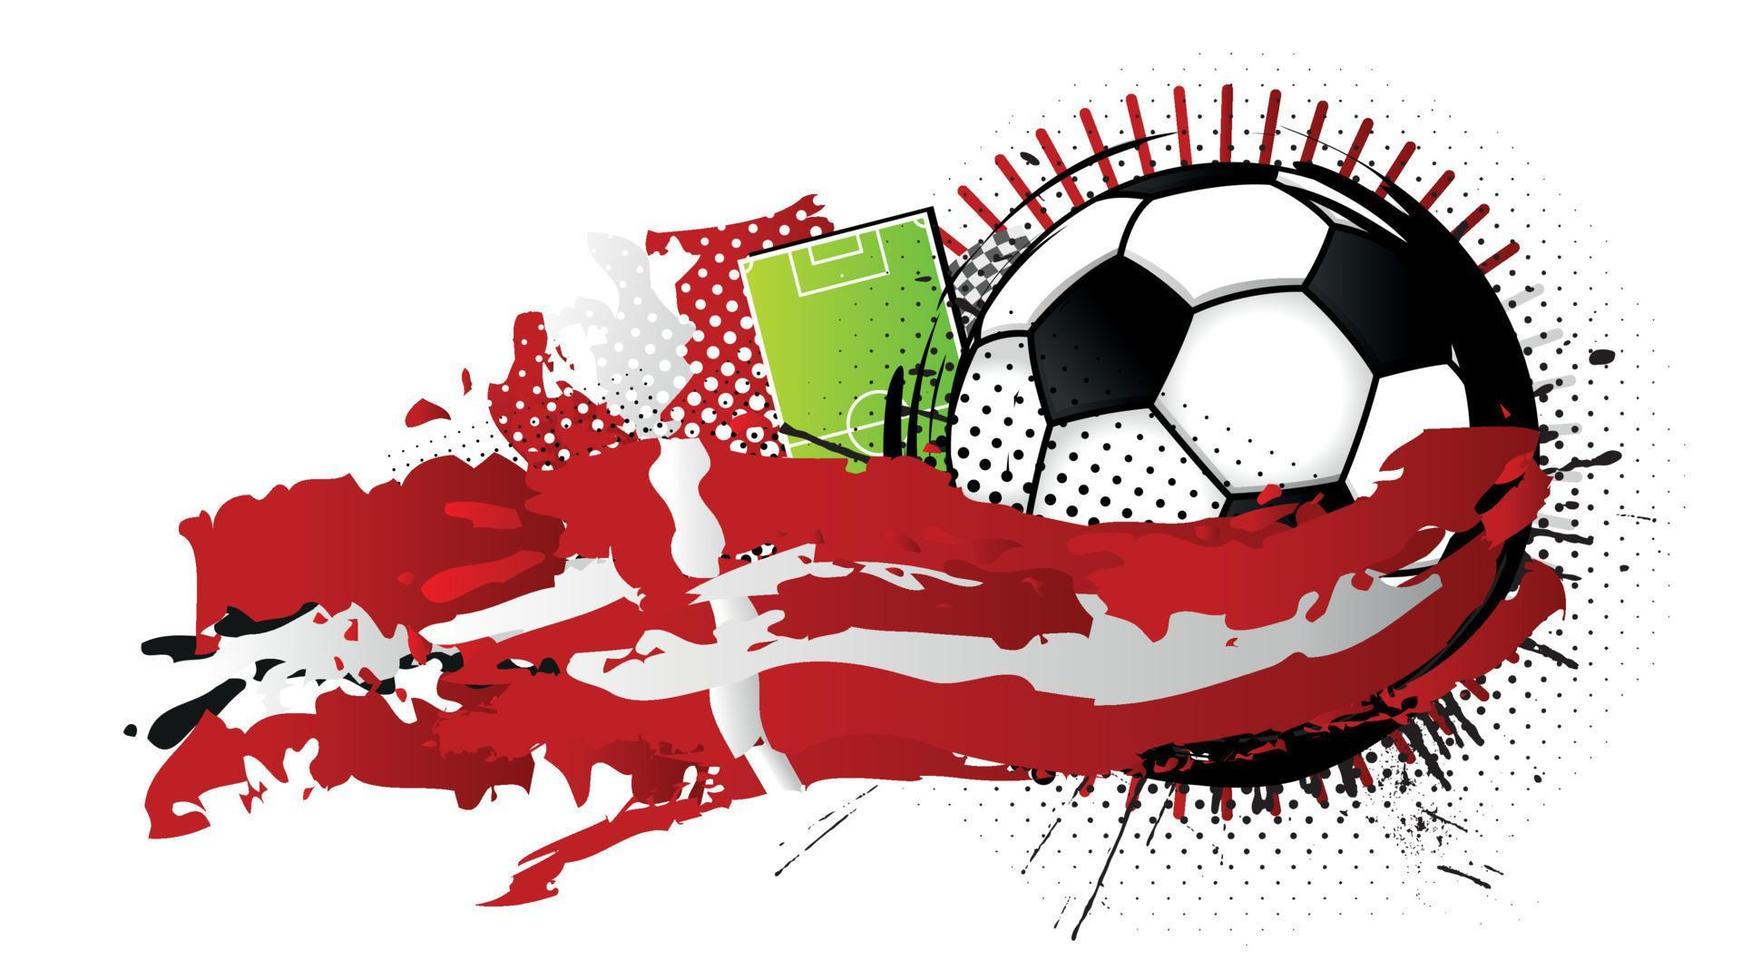 Balón de fútbol blanco y negro rodeado de manchas rojas y blancas que forman la bandera de Dinamarca con un campo de fútbol al fondo. imagen vectorial vector